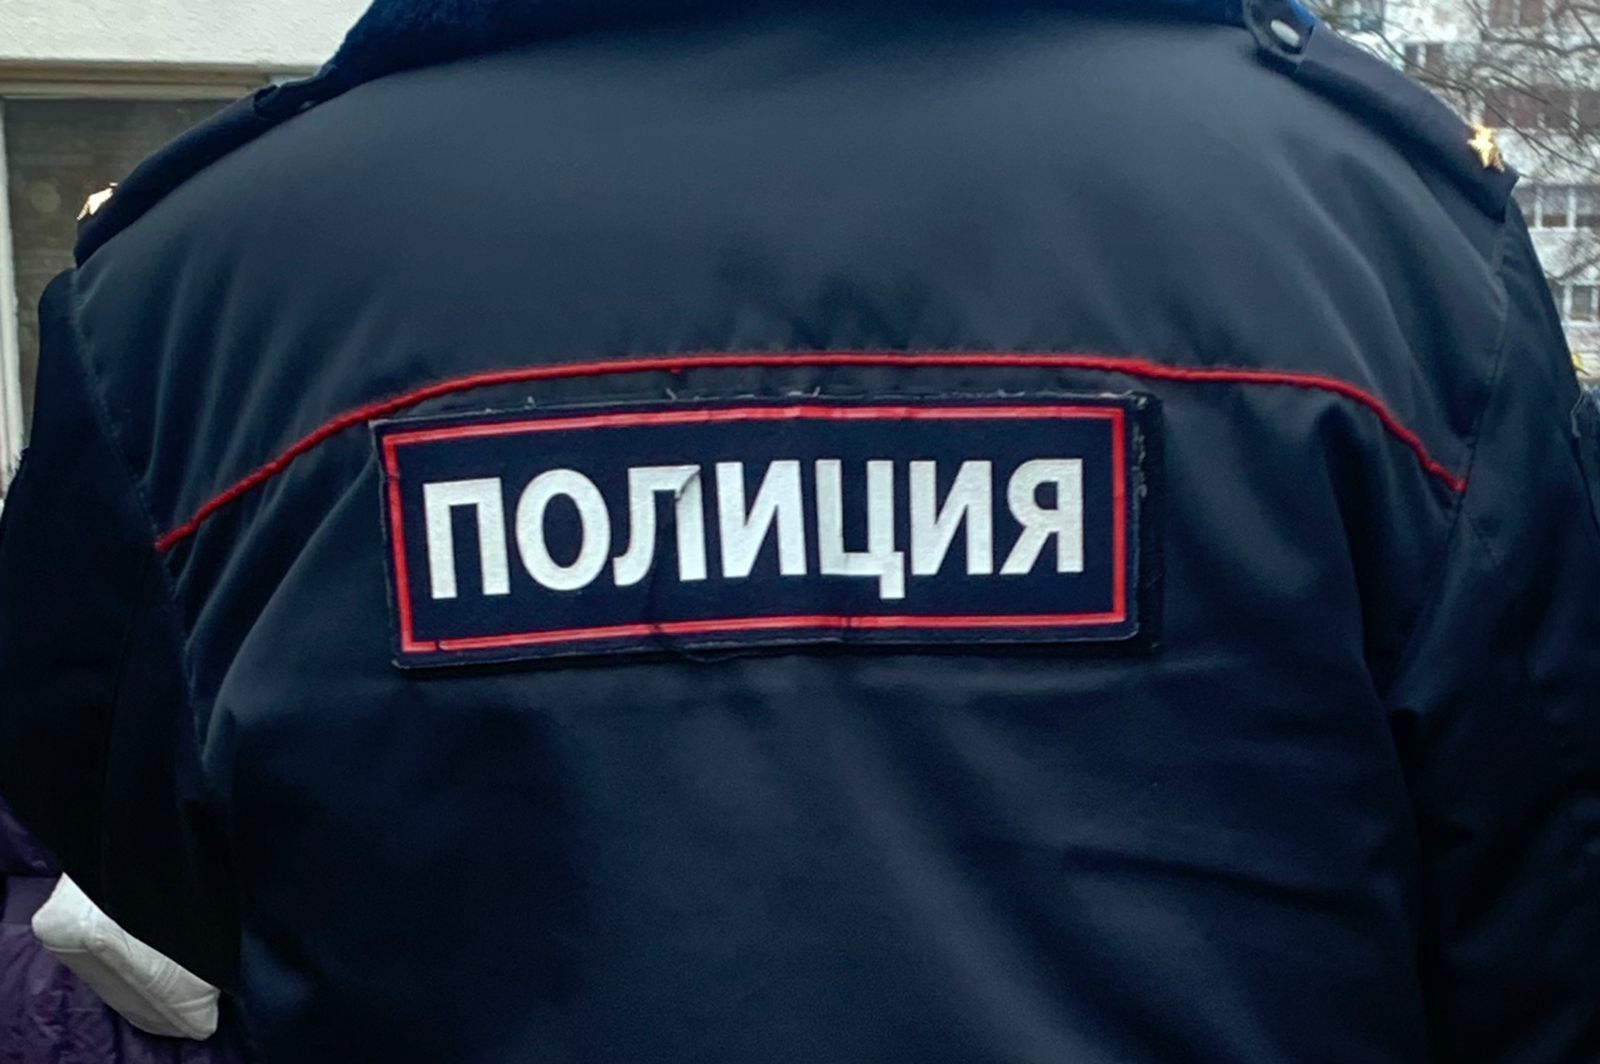 После гибели 14-летнего подростка в РТ задержан руководитель стройфирмы